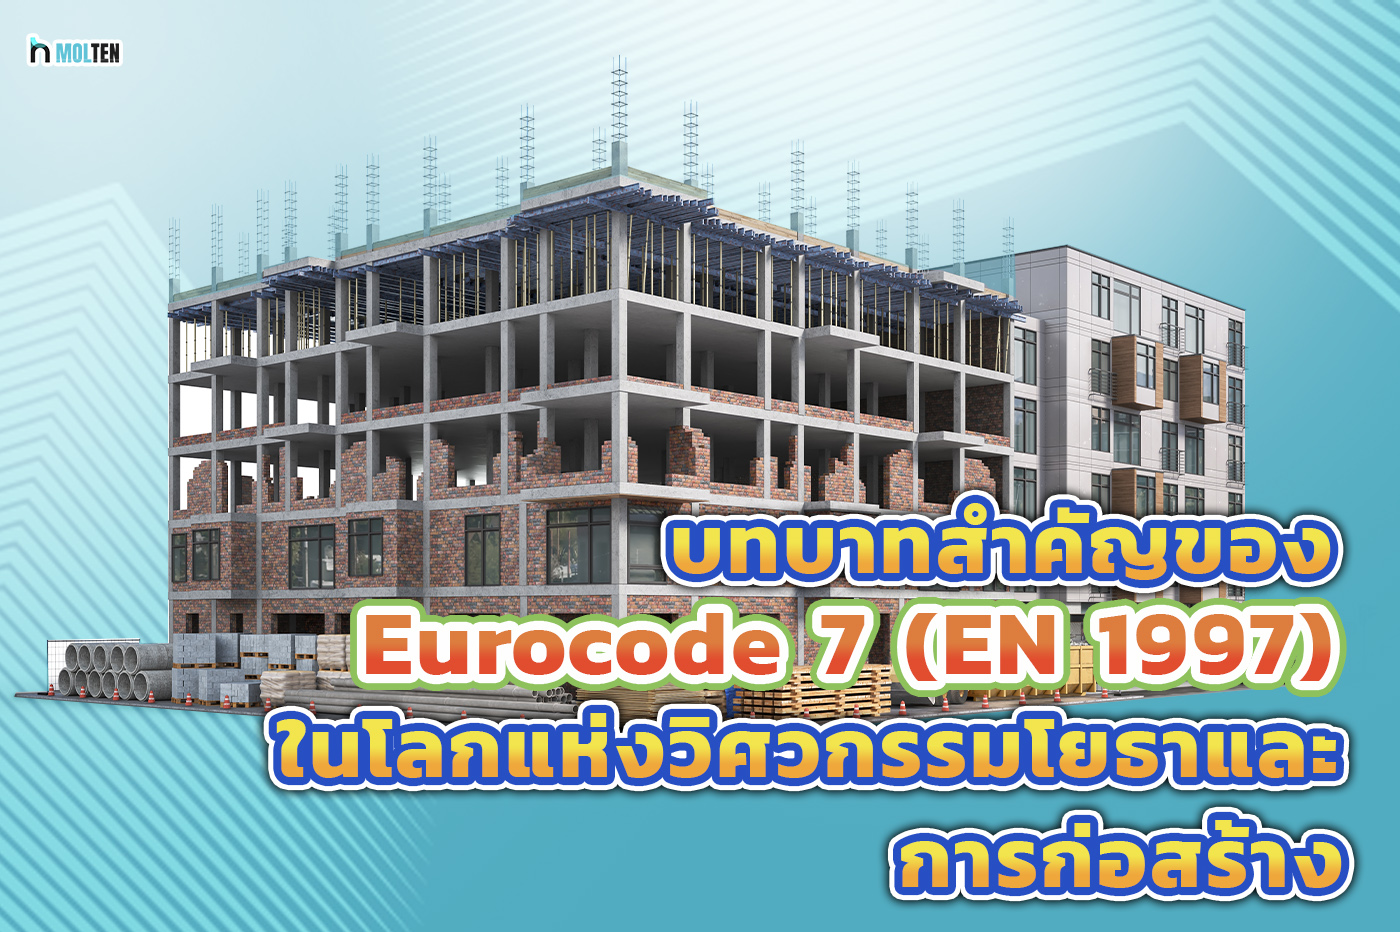 1.บทบาทสำคัญของ Eurocode 7 (EN 1997) ในโลกแห่งวิศวกรรมโยธาและการก่อสร้าง